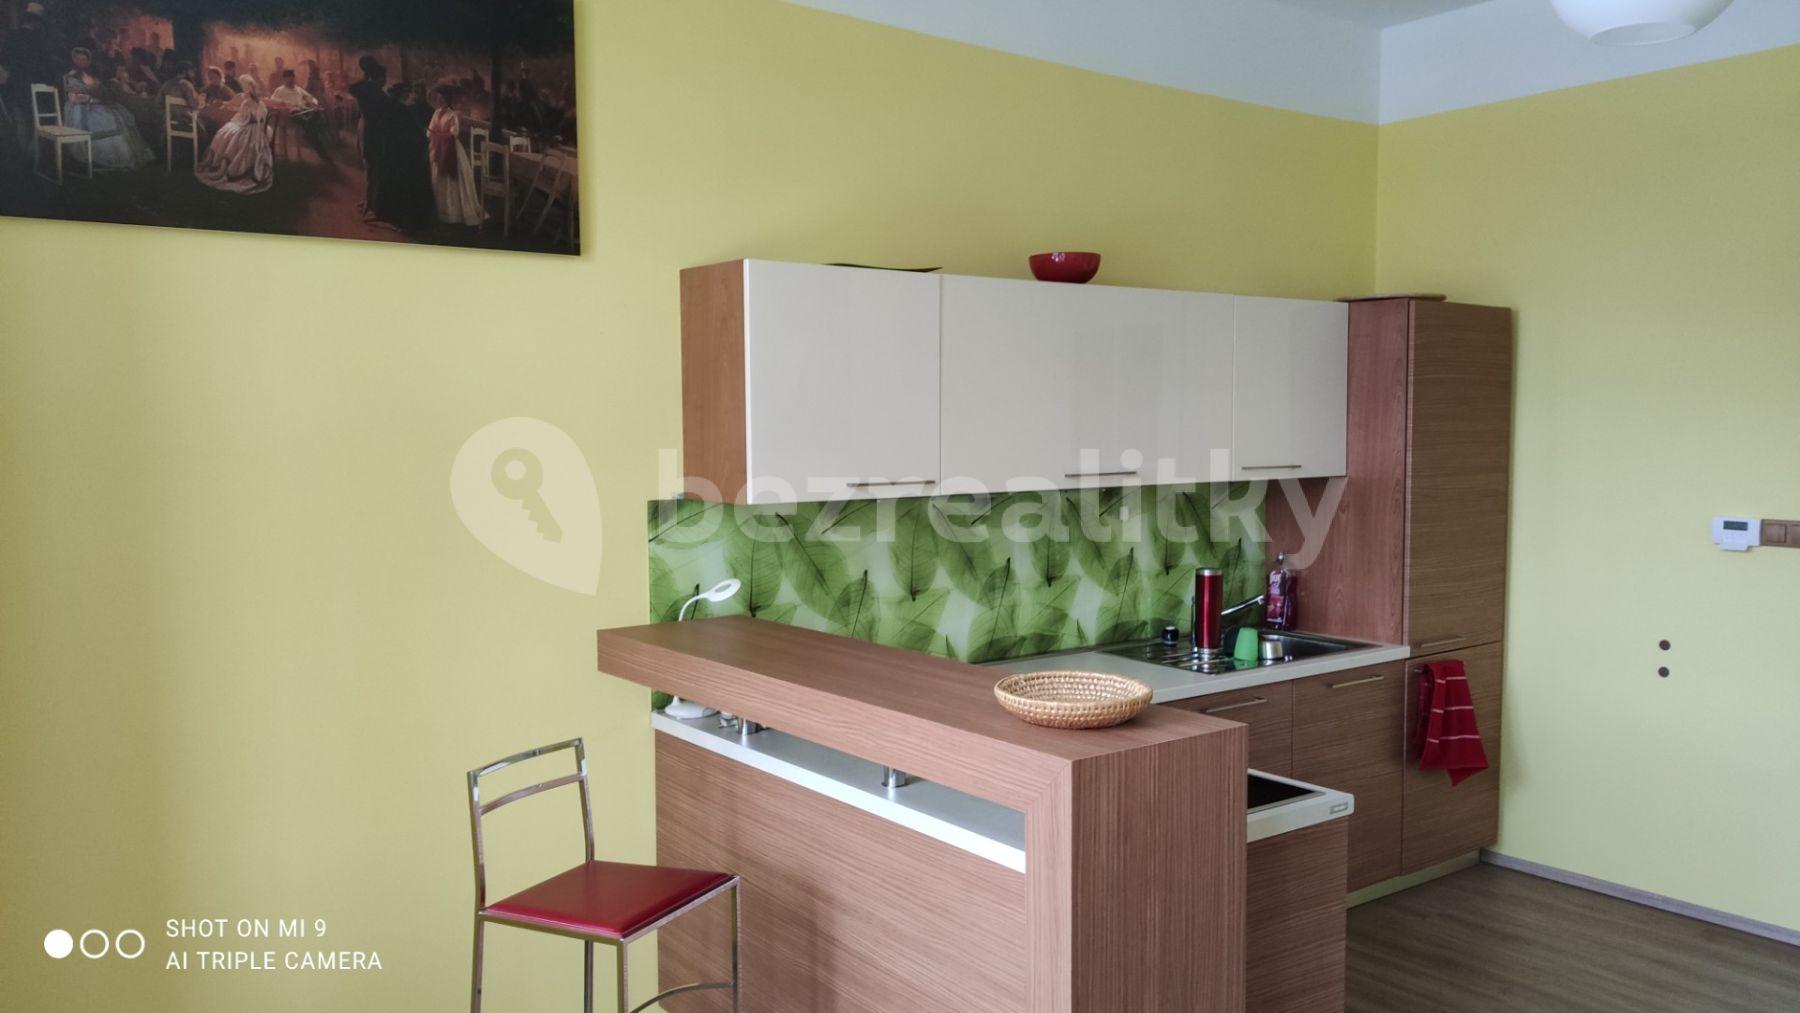 1 bedroom with open-plan kitchen flat to rent, 54 m², Mělnická, Mšeno, Středočeský Region